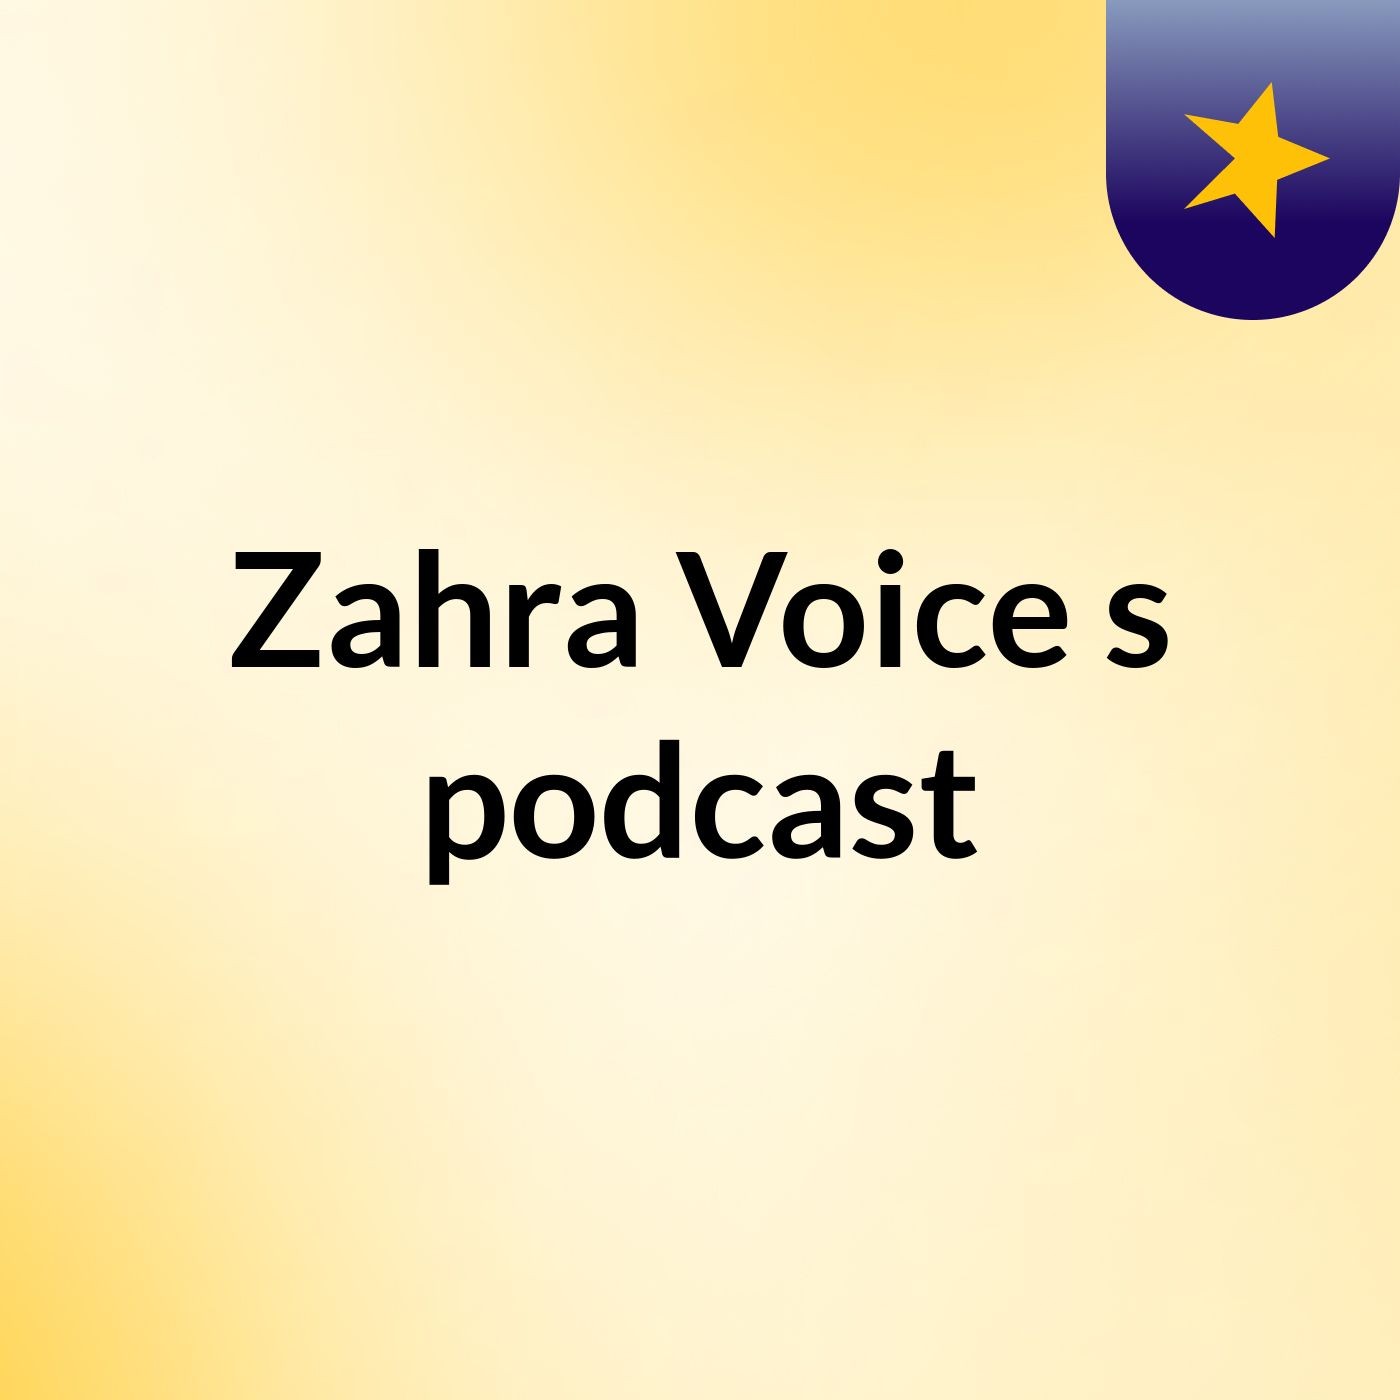 Zahra Voice's podcast